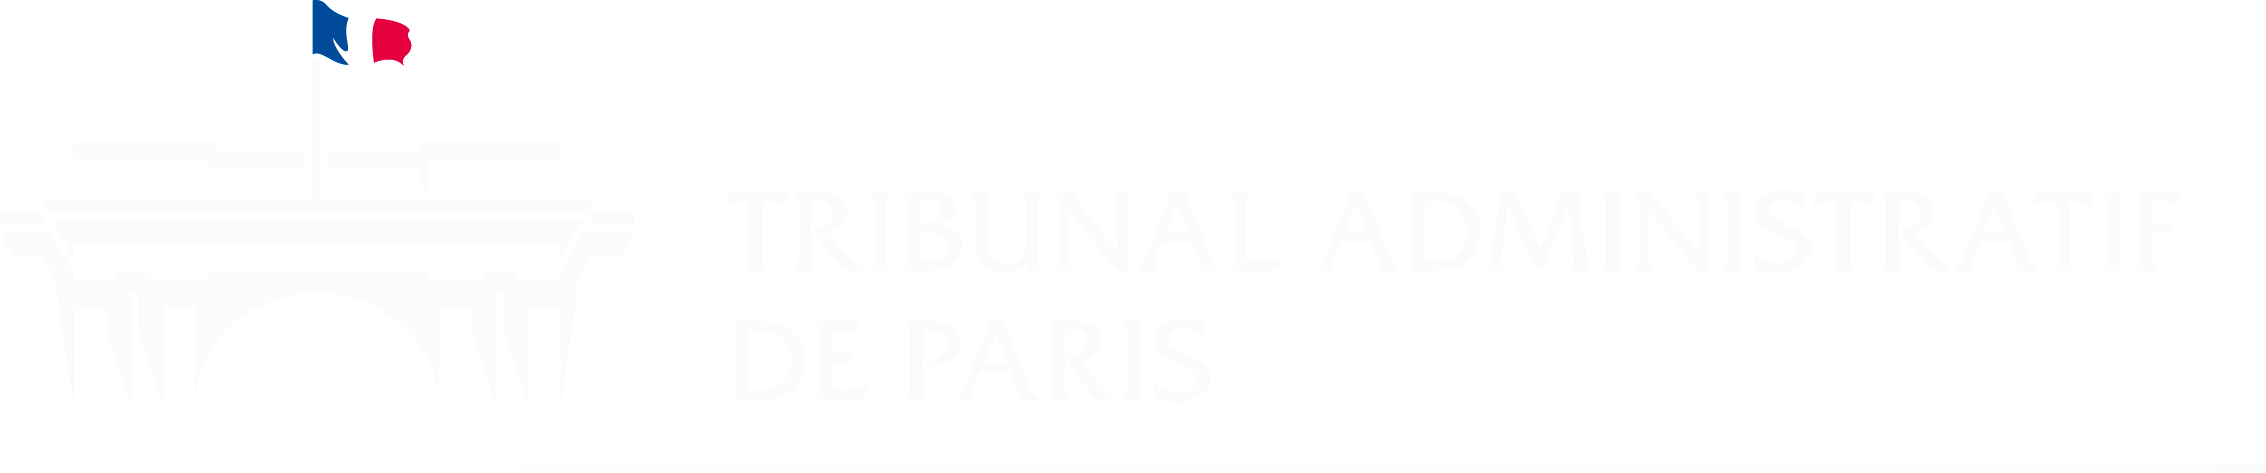 Tribunal administratif de Paris - Retour à l'accueil